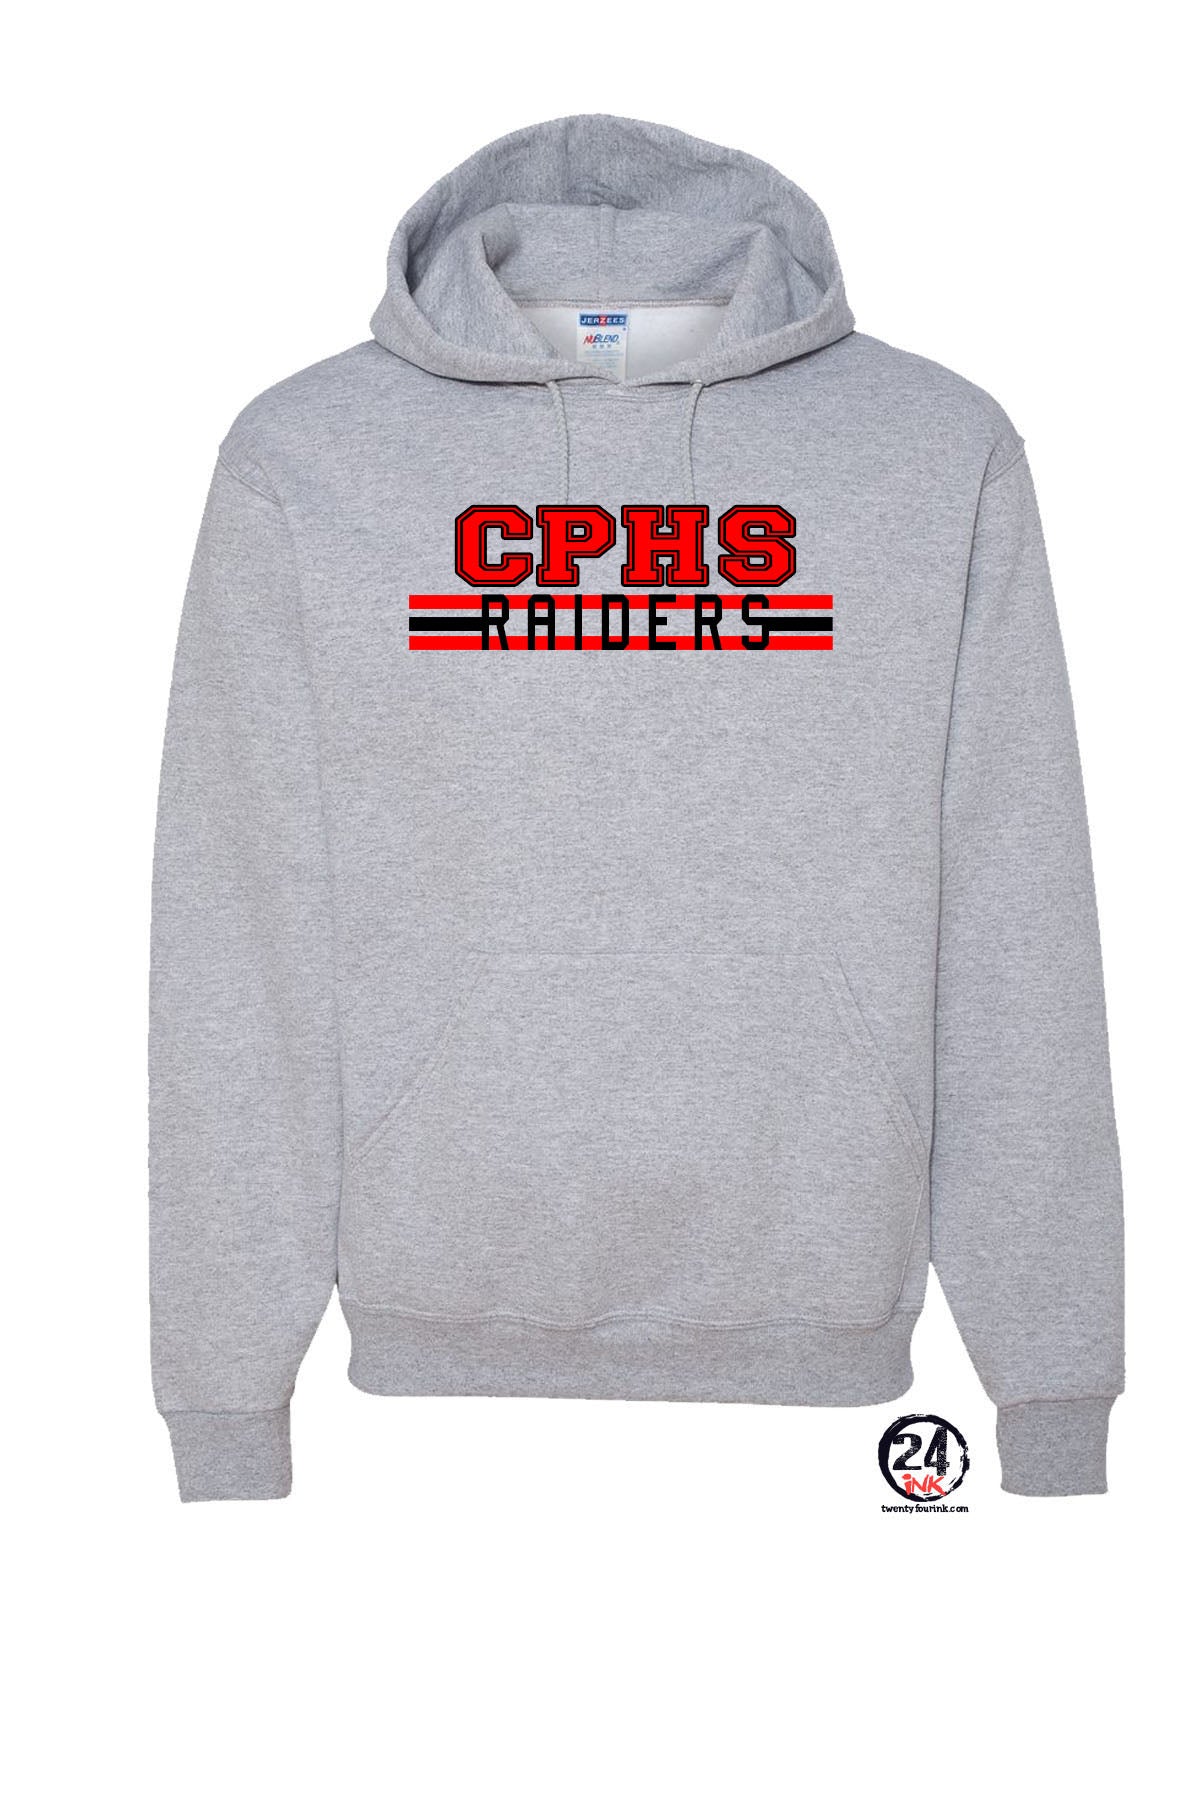 CPHS Lines Hooded Sweatshirt